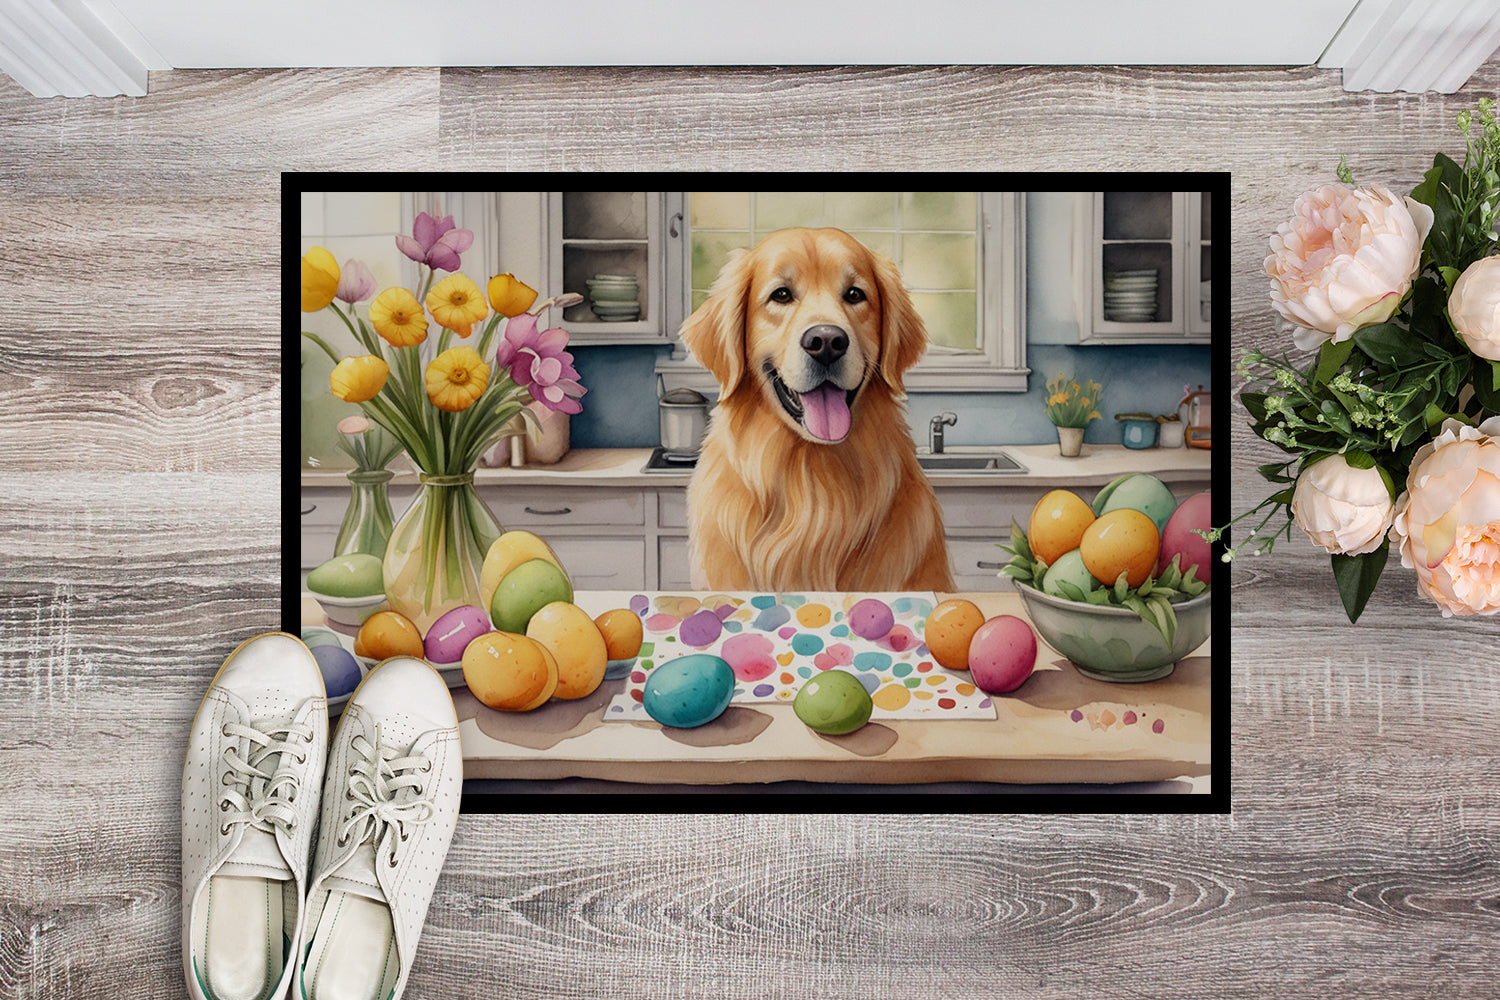 Buy this Decorating Easter Golden Retriever Doormat